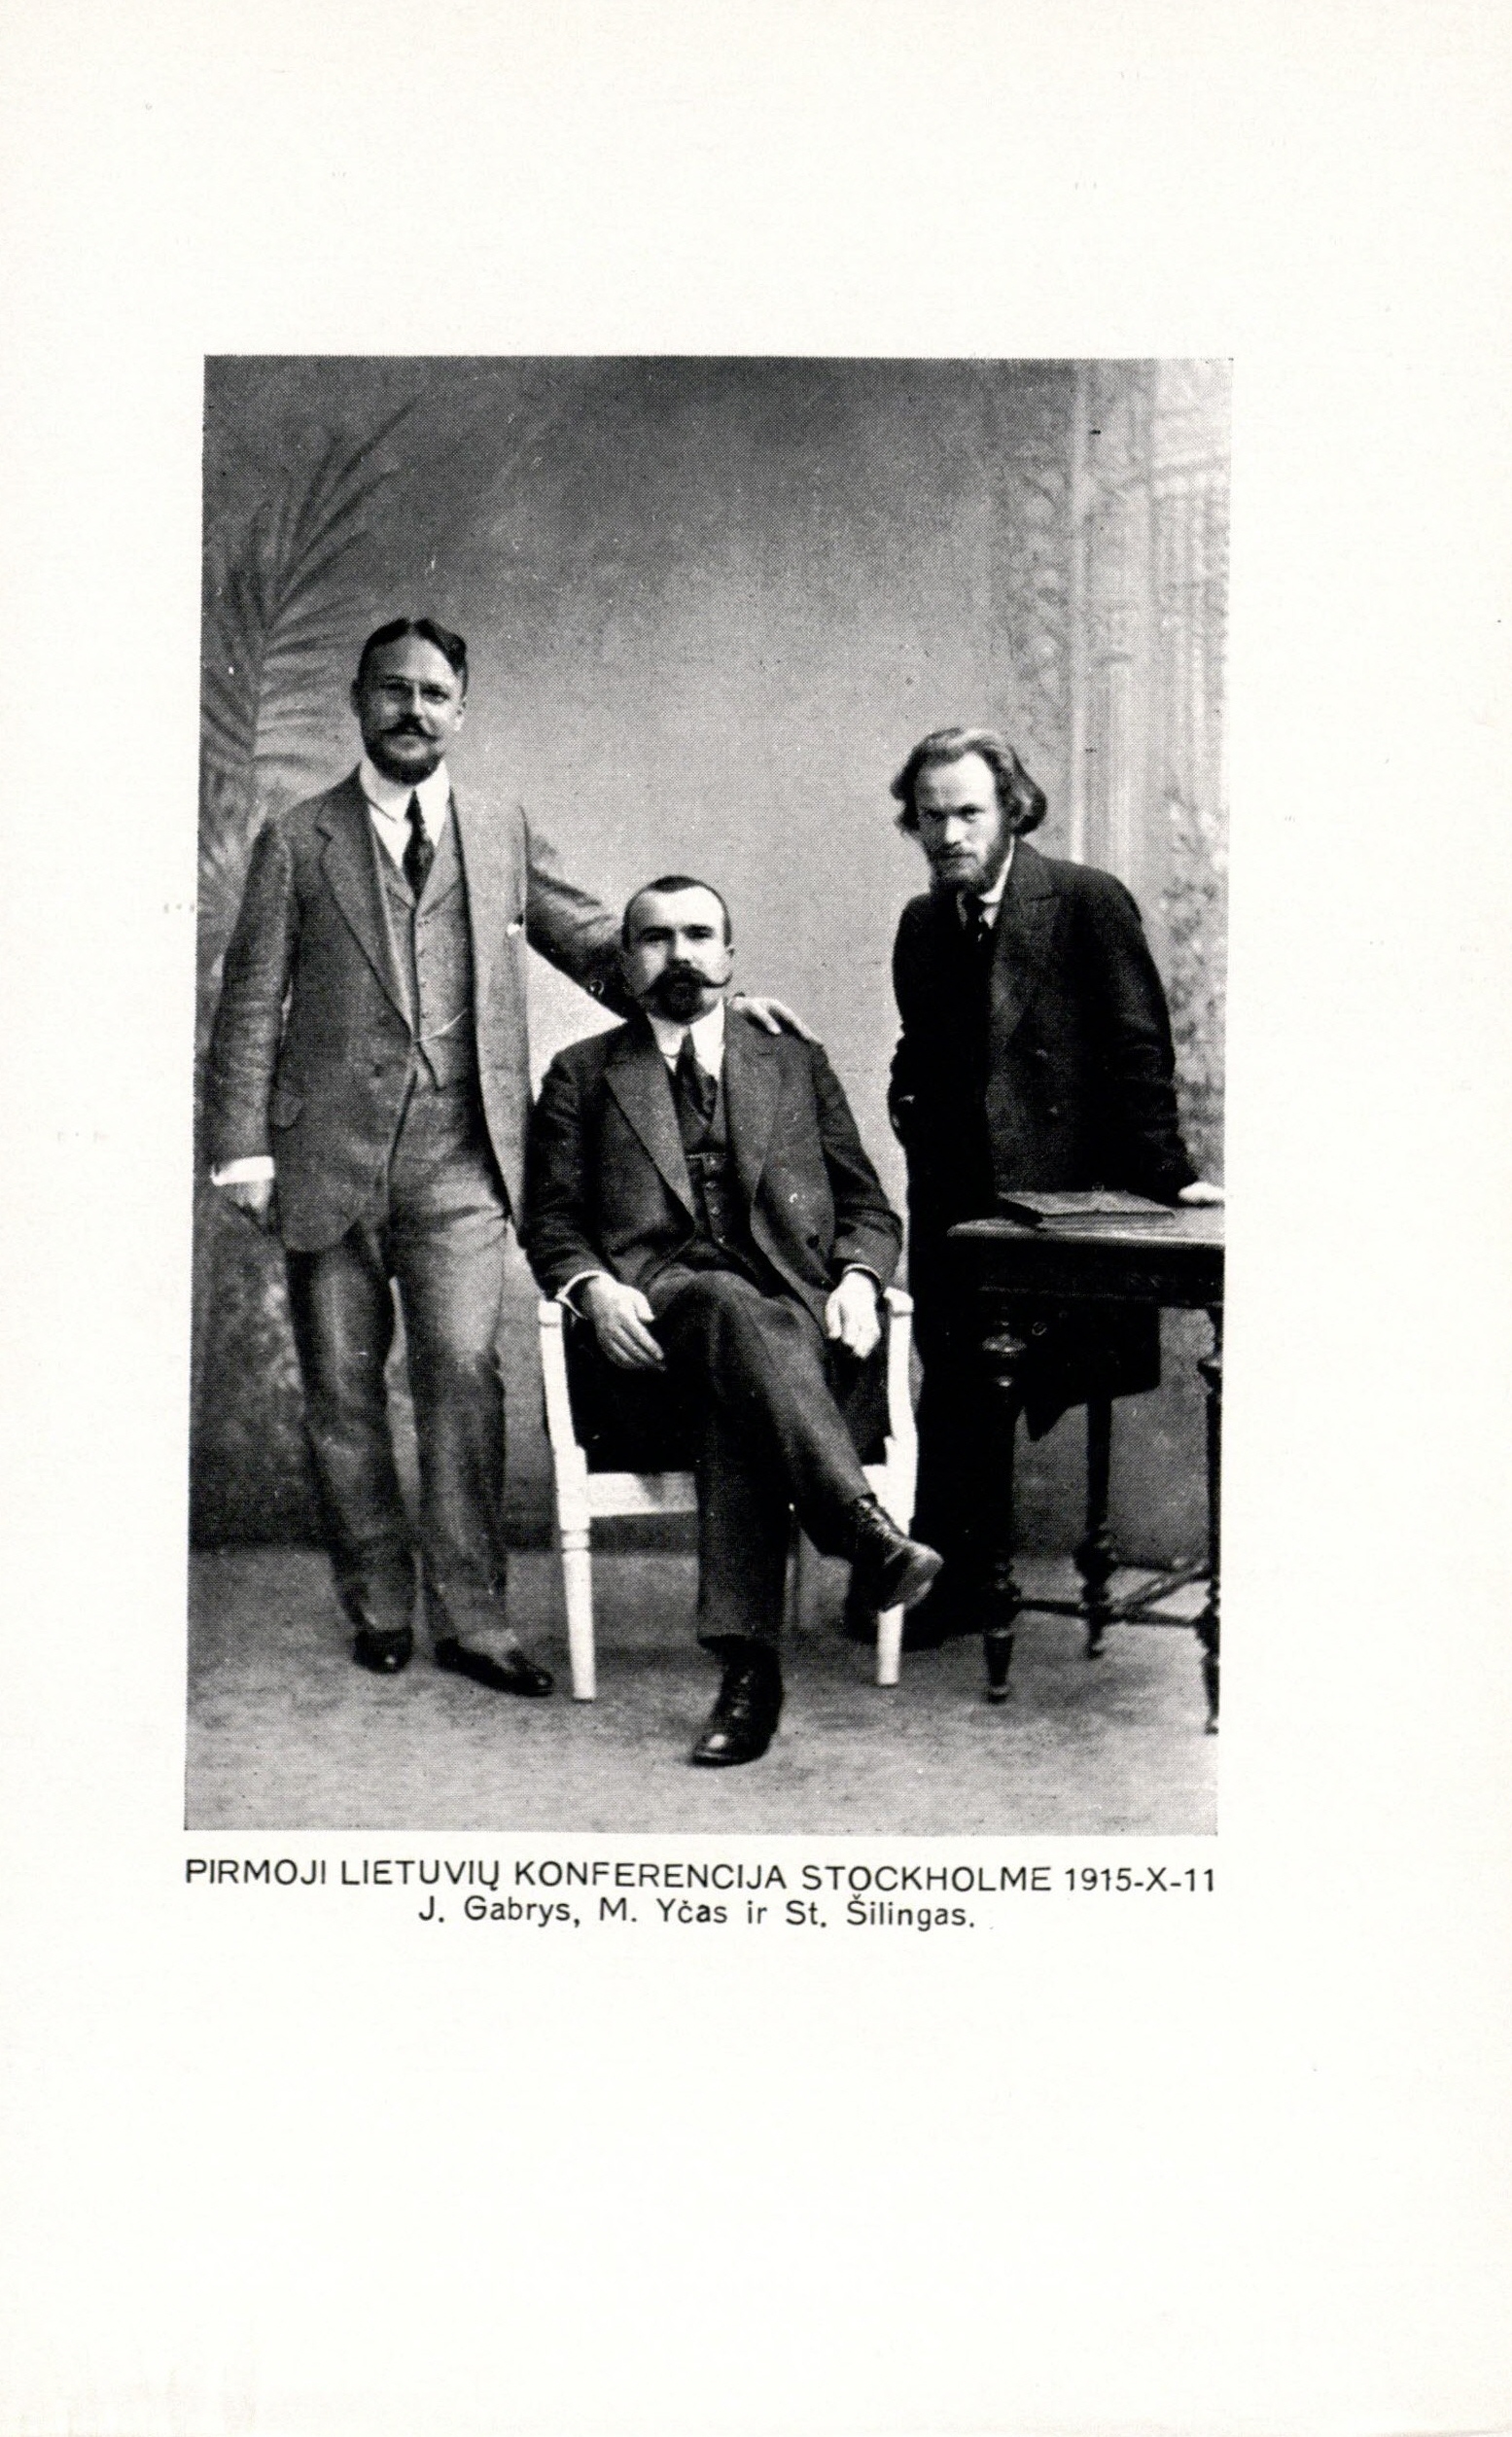 Pirmosios lietuvių konferencijos Stokholme dalyviai J. Gabrys, M. Yčas ir S. Šilingas. 1915 10 11